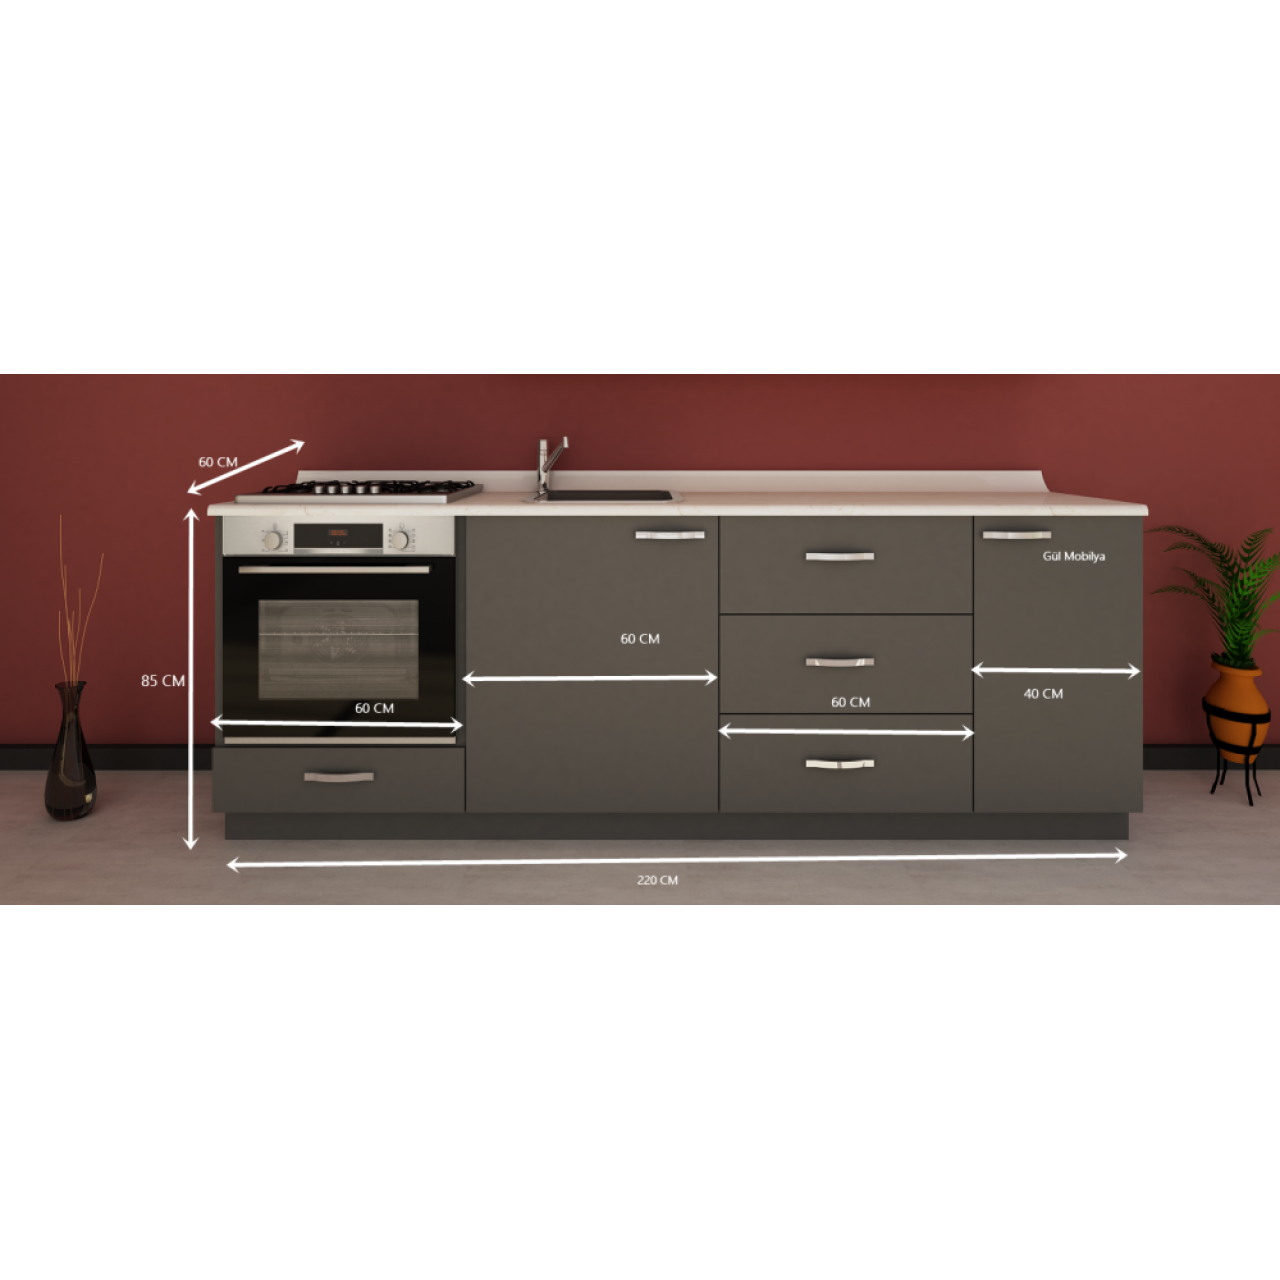 220 cm Mutfak alt dolap MDFLAM  kapaklı Hazır modüler mutfak dolabı